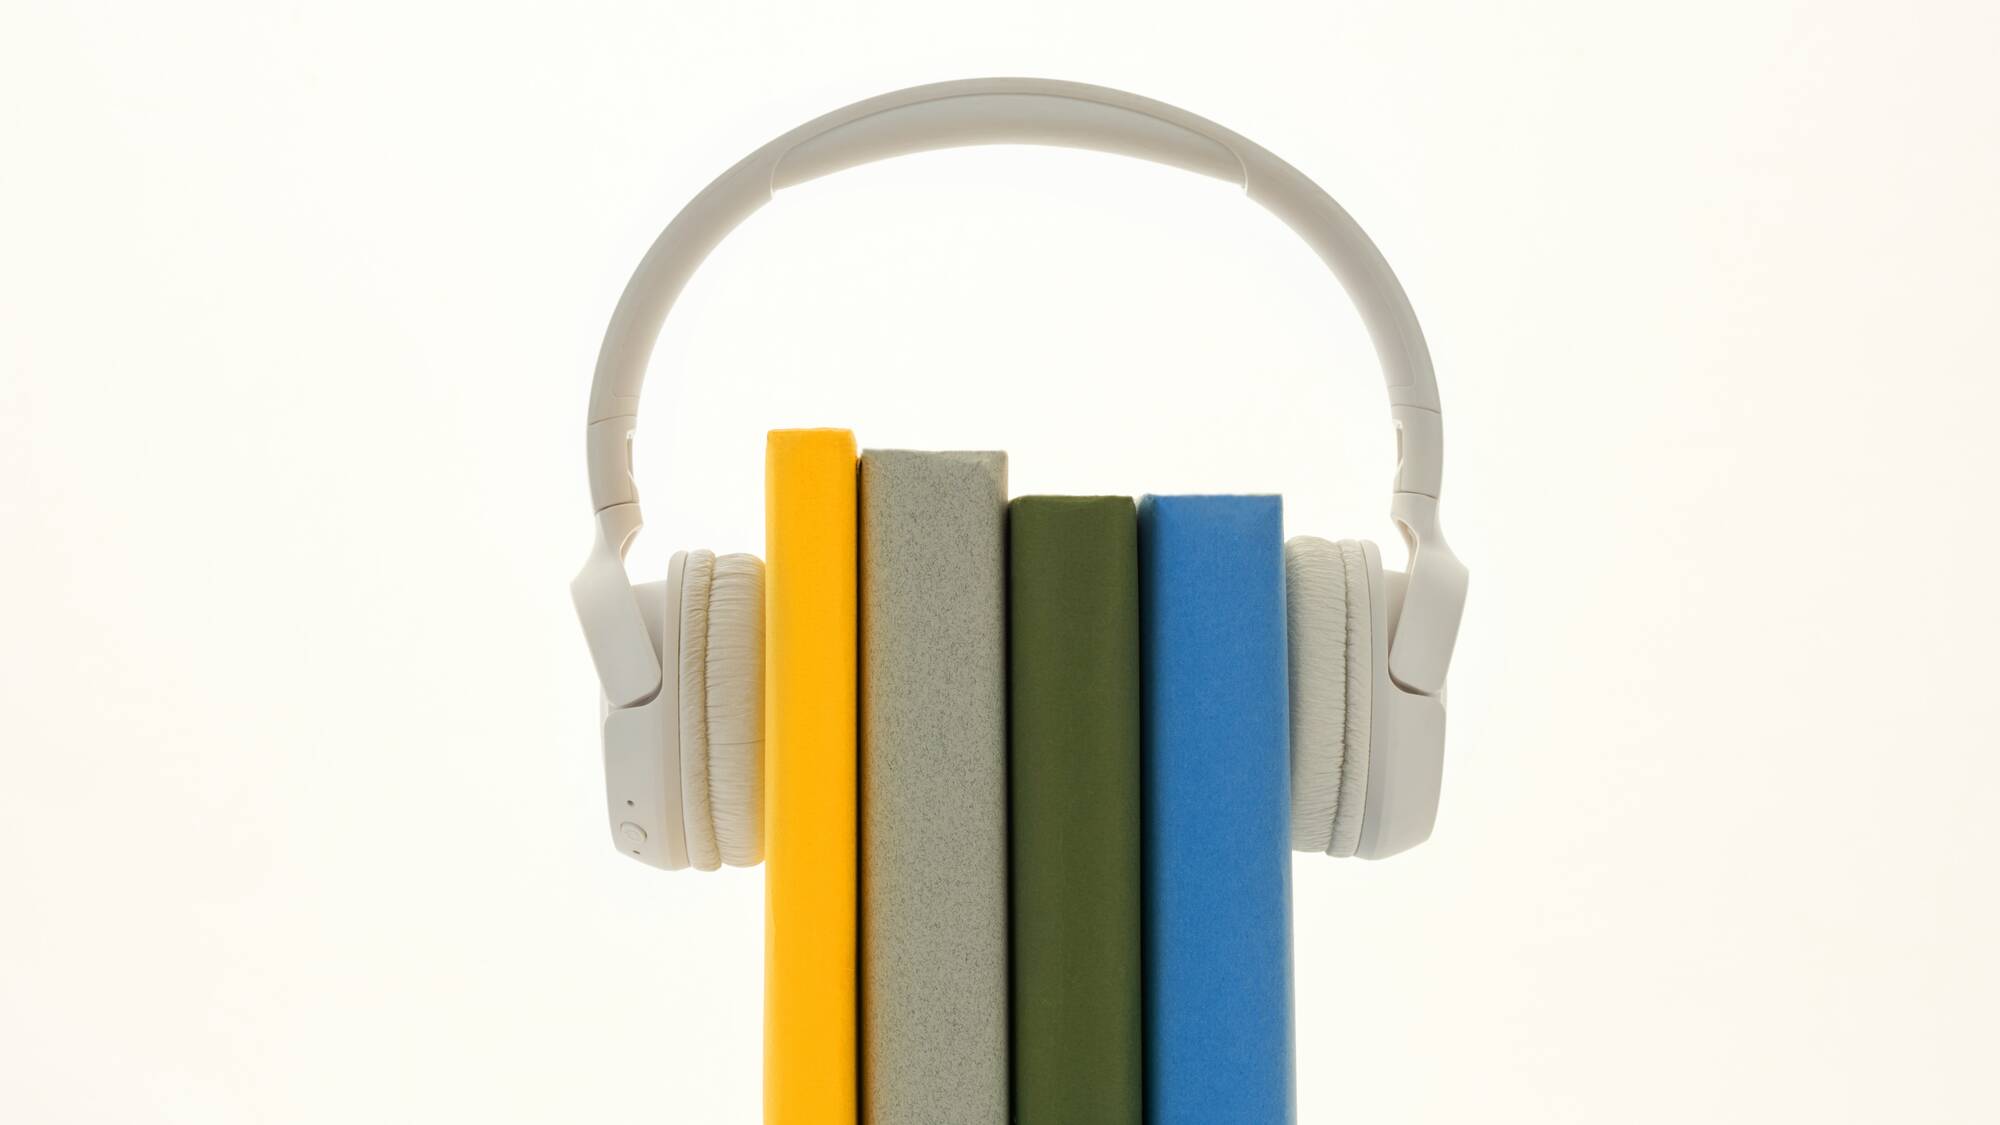 Casque audio avec des livres